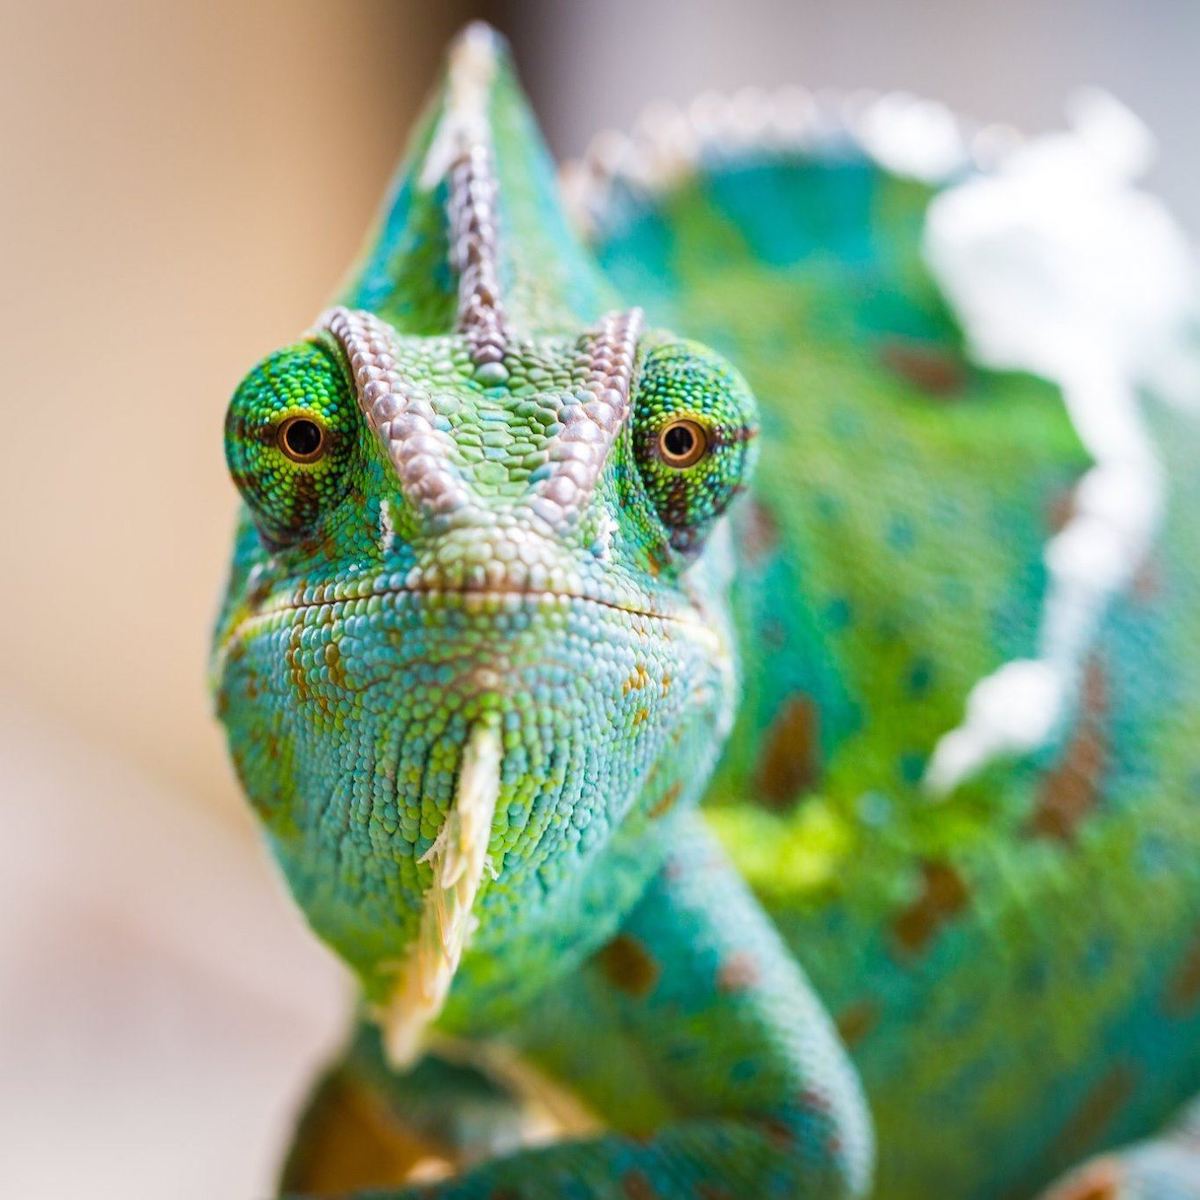 Chameleon face close up.